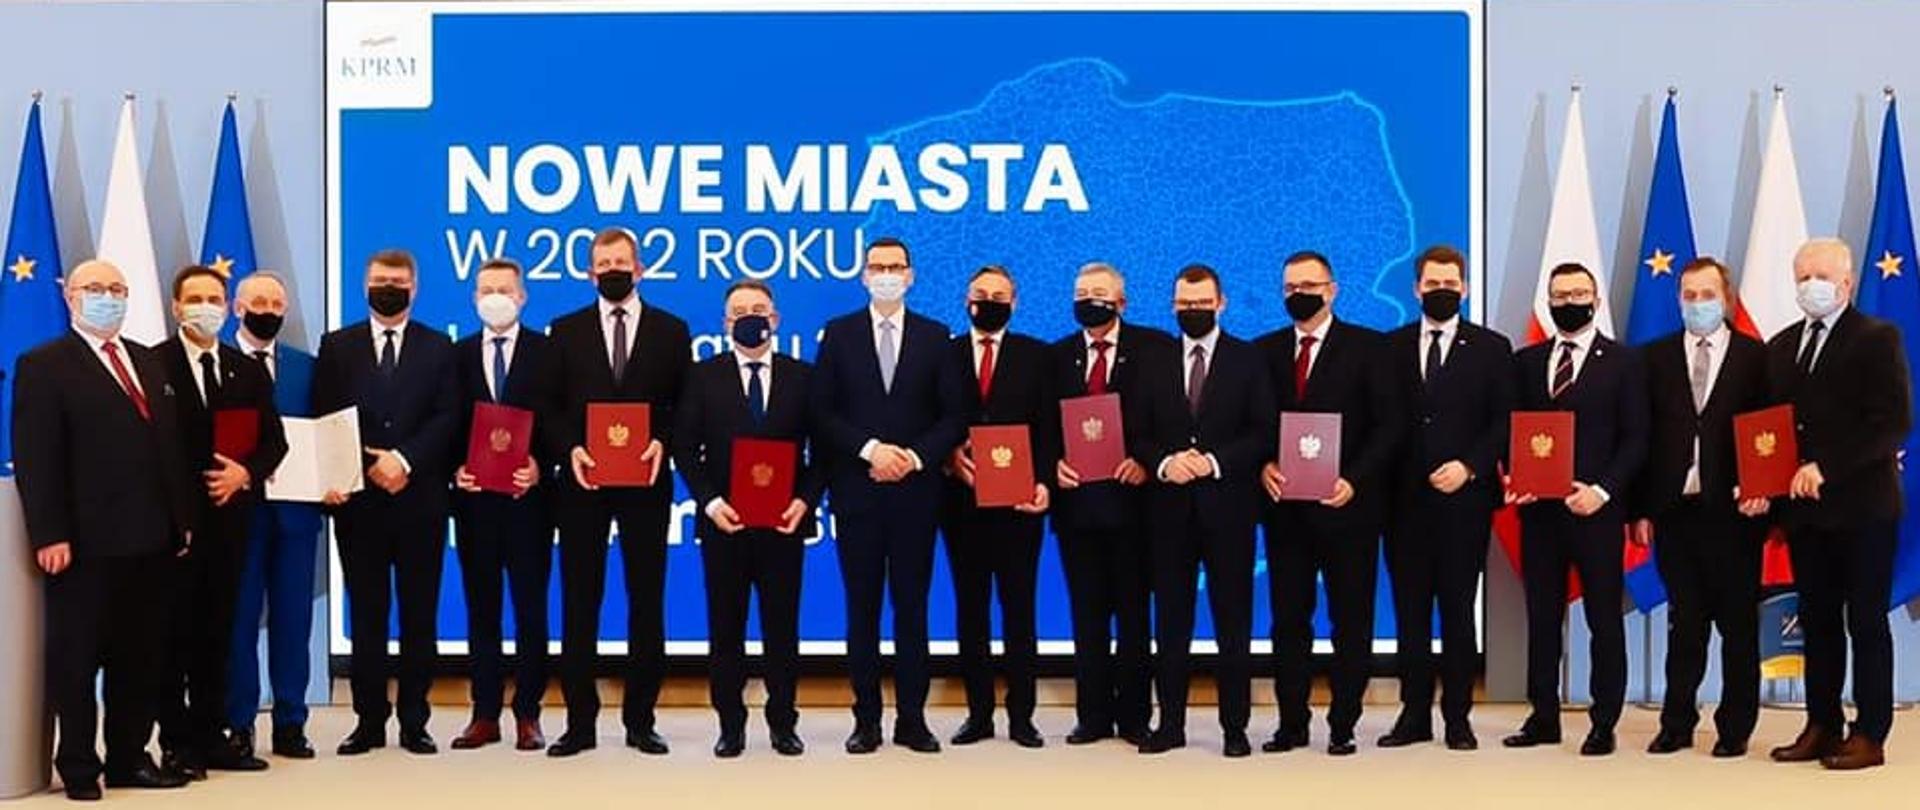 Na zdjęciu znajduje się 16 elegancko ubranych mężczyzn. Pozują oni do zdjęcia, stojąc na podeście. W tle granatowa grafika przygotowana przez Kancelarię Premiera z napisem "NOWE MIASTA W 2022 ROKU". 